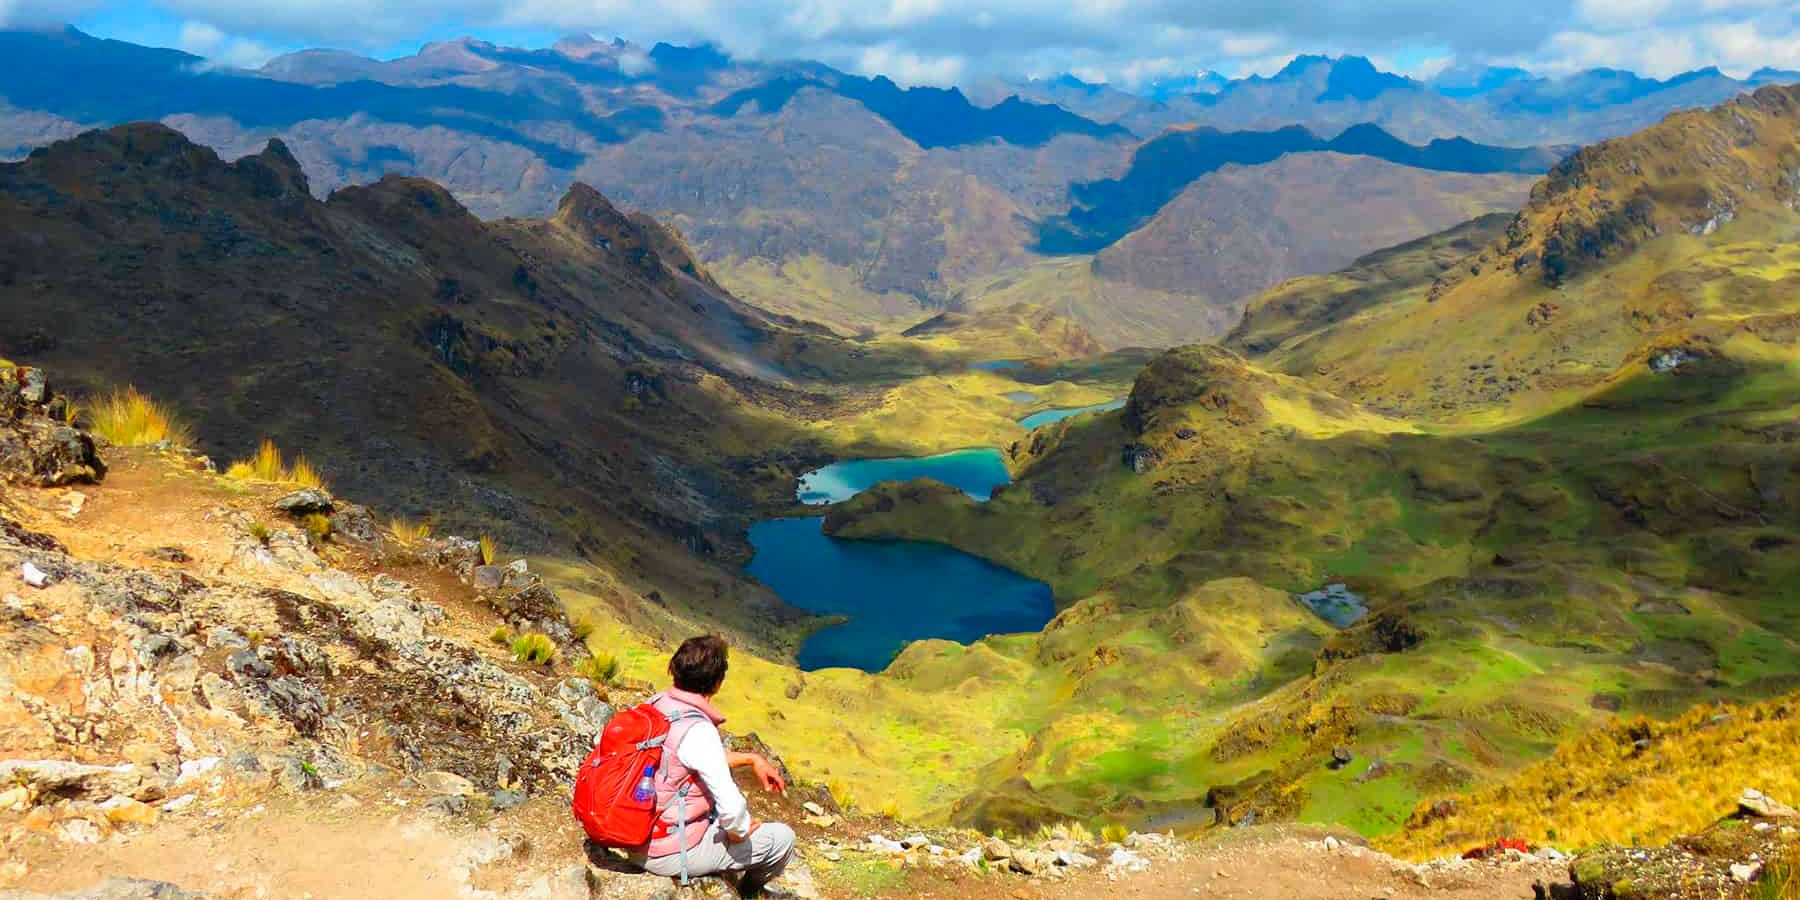 Beautiful view on Lares Trek - Lares Trek to Machu Picchu by Quiswarani 4 Days